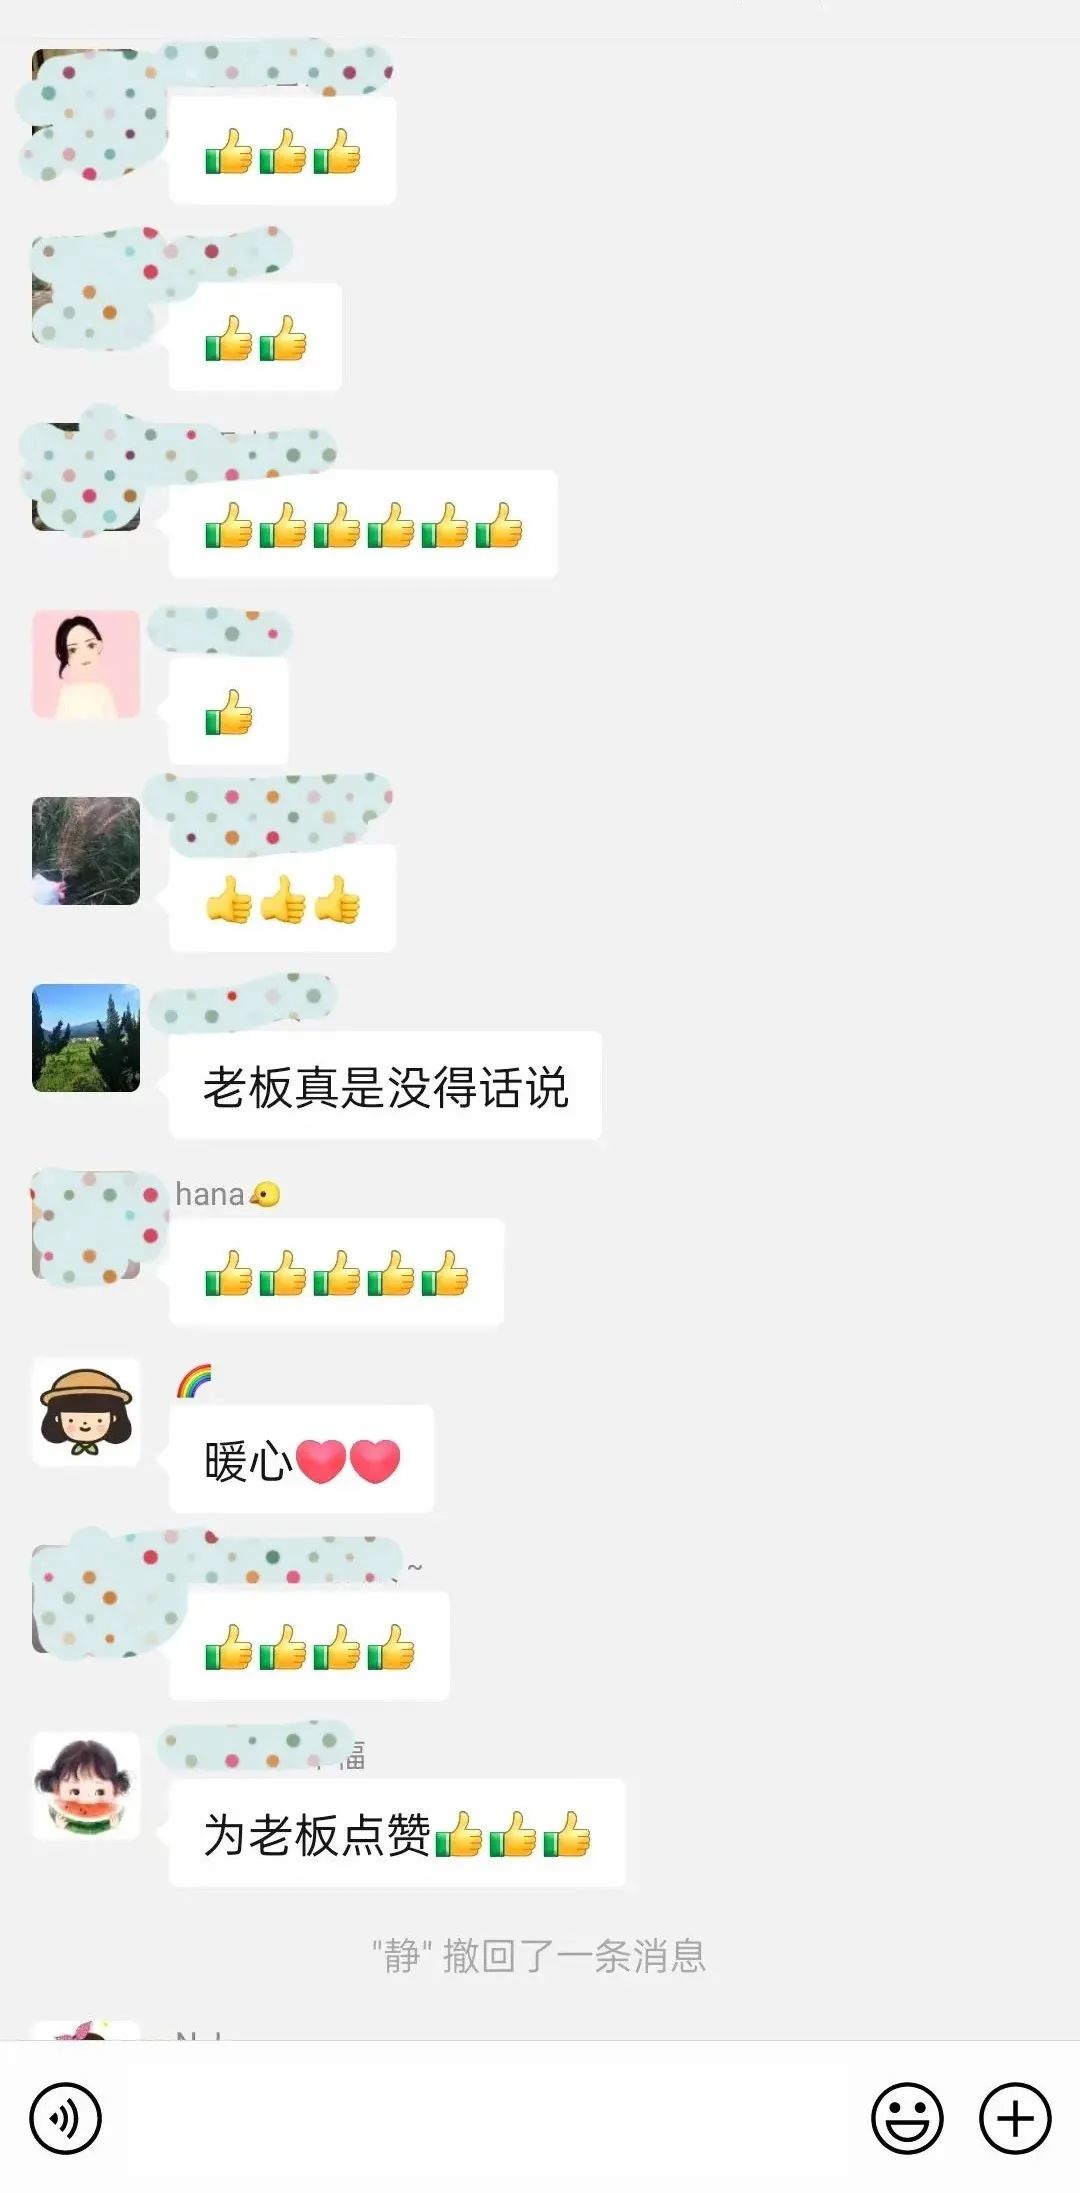 丁彦雨航微博宣布将返回中国